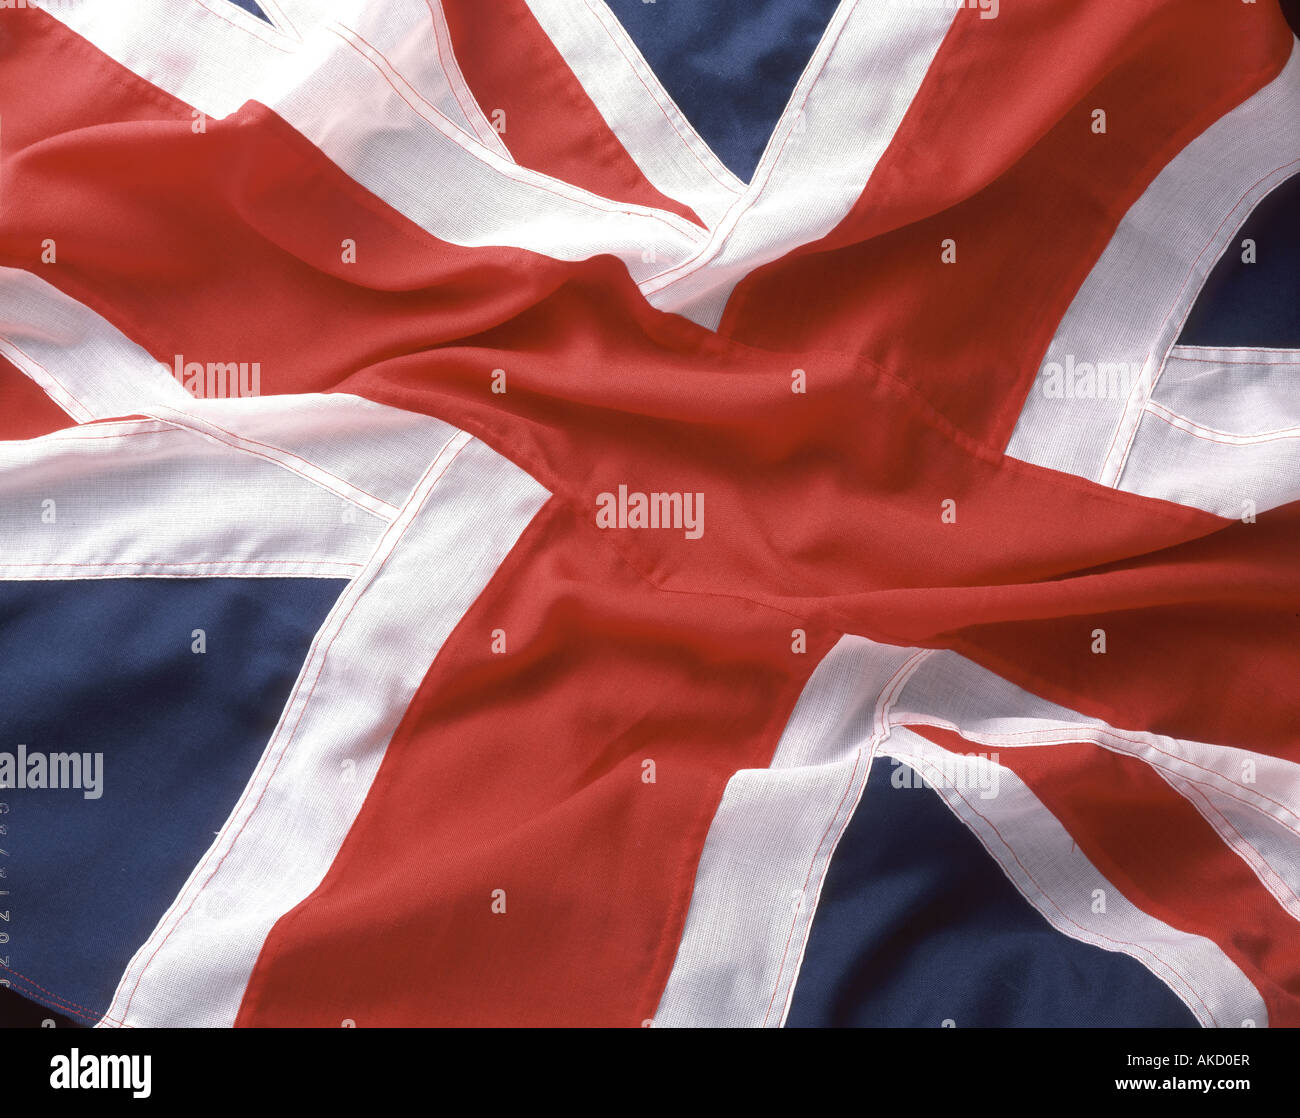 Gros plan du drapeau britannique de l'Union Jack pris en studio, Grand Londres, Angleterre, Royaume-Uni Banque D'Images